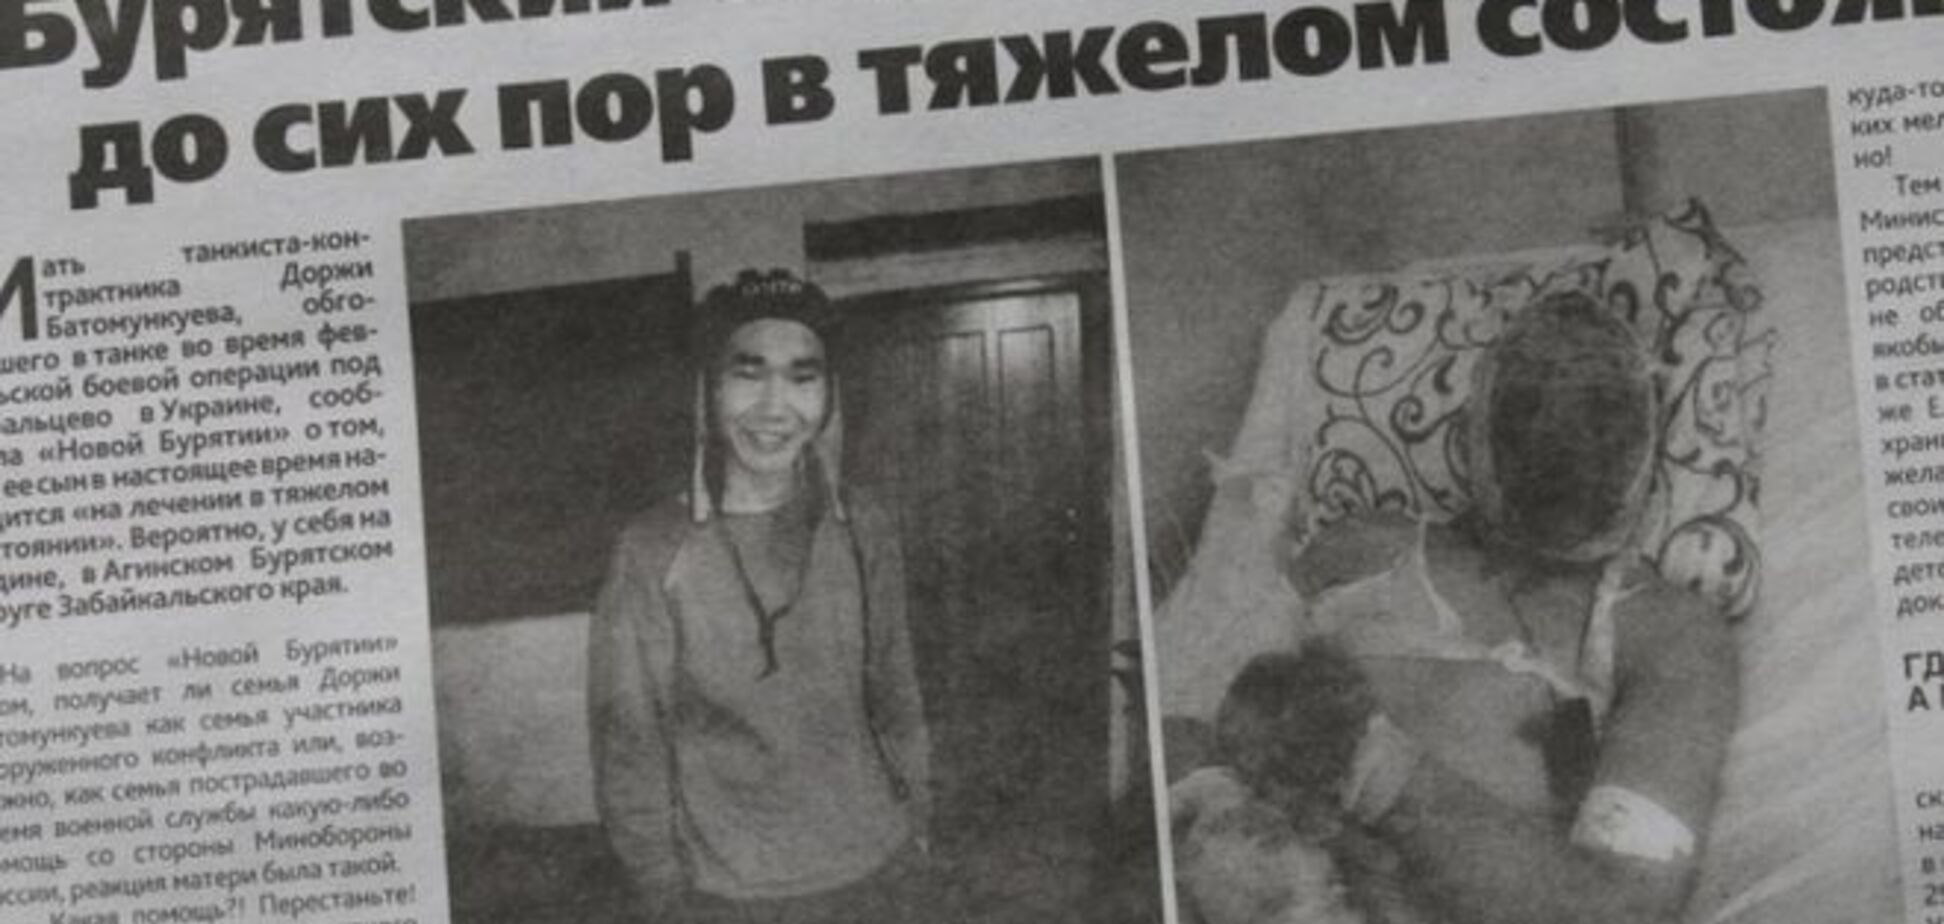 Бурятская газета вырезала полосу о раненом под Дебальцево танкисте